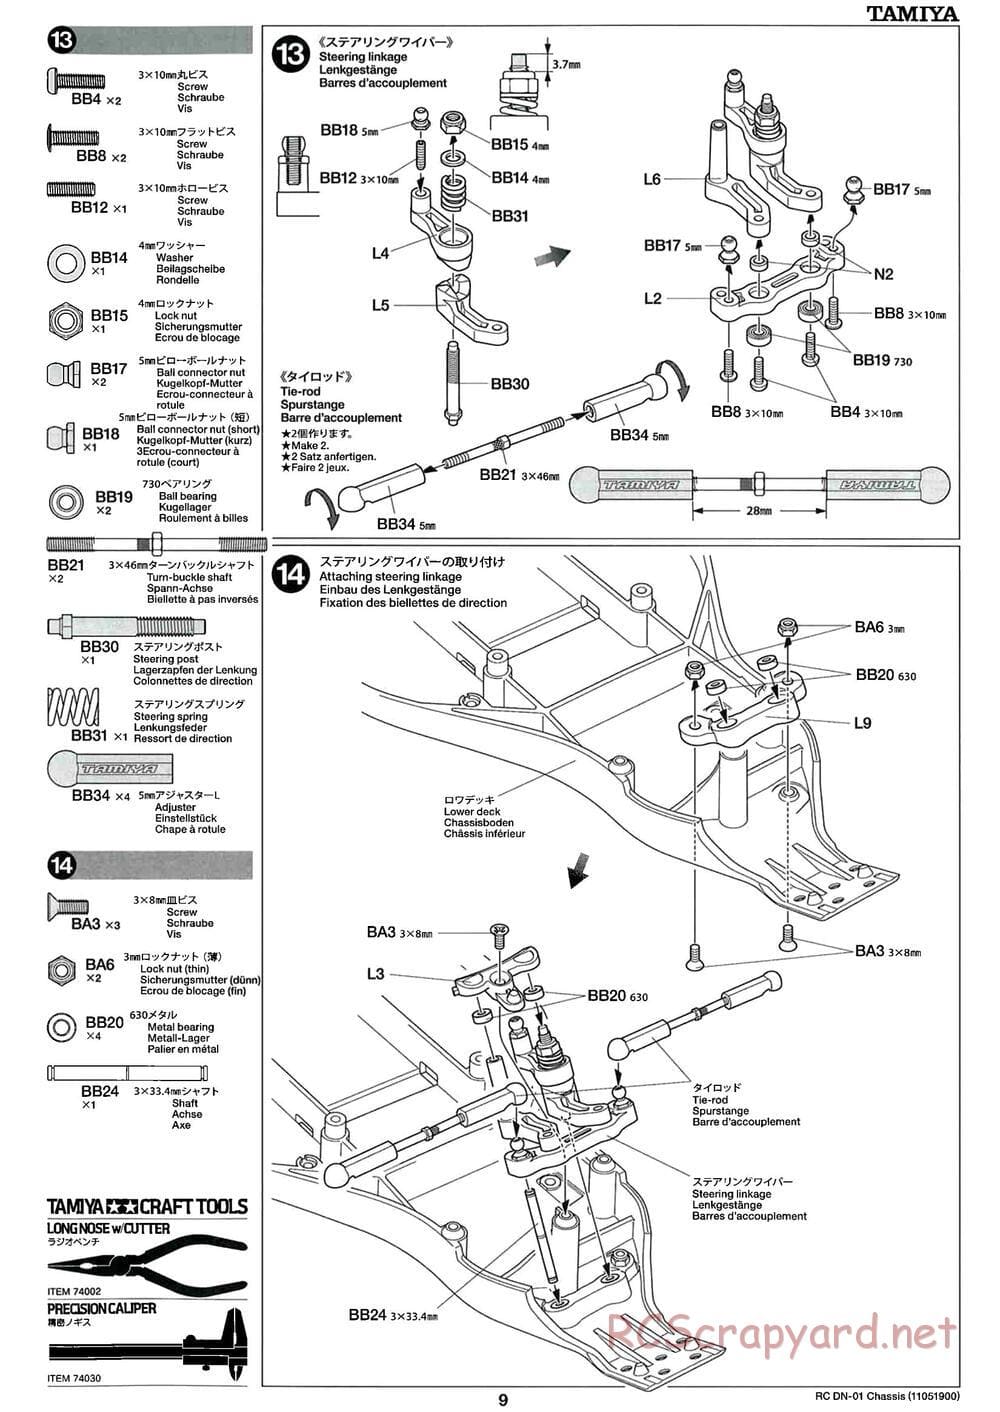 Tamiya - DN-01 Chassis - Manual - Page 9